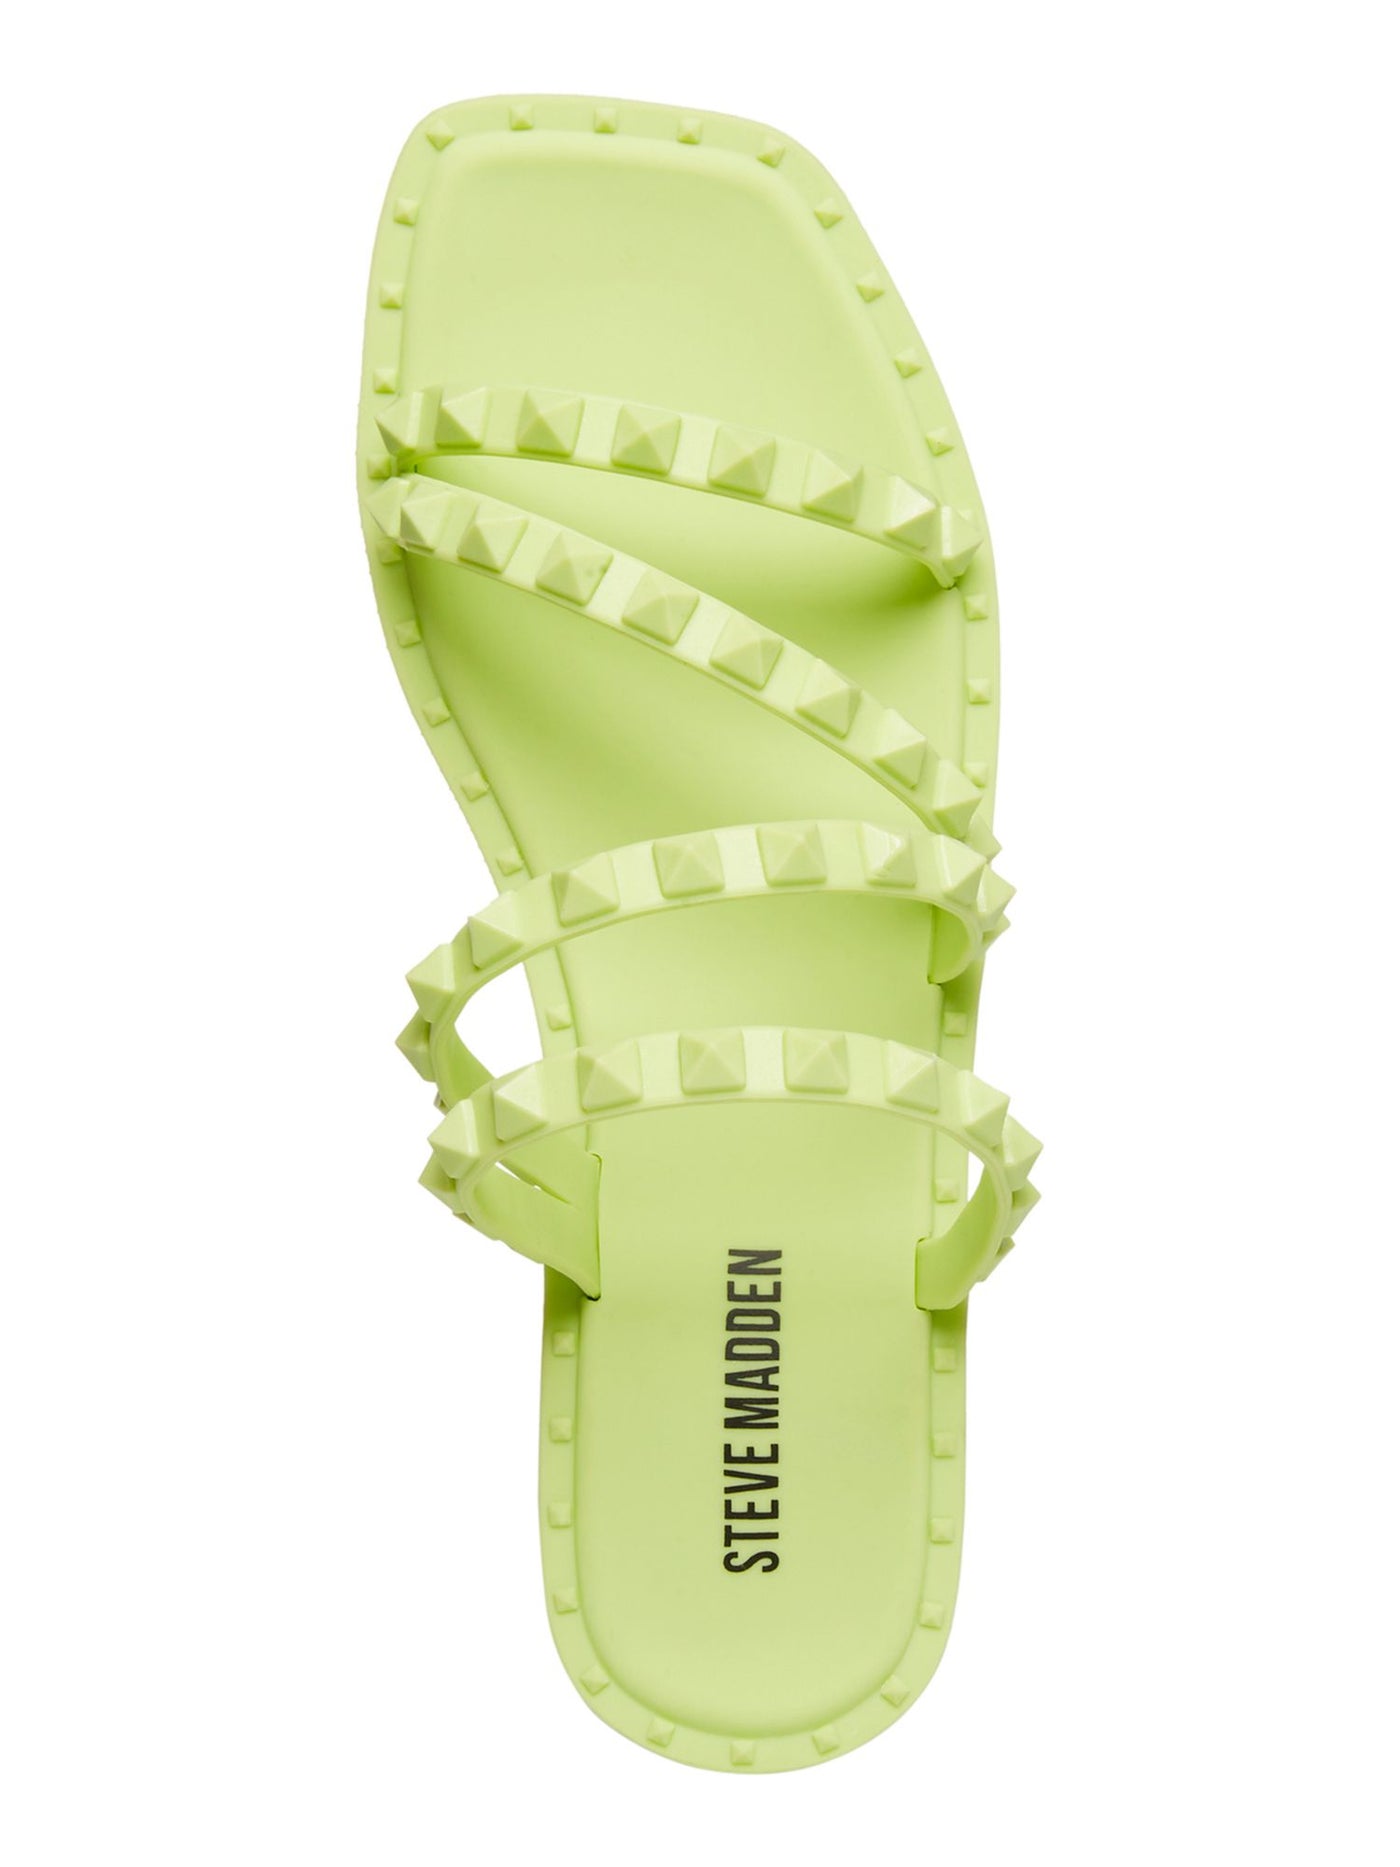 STEVE MADDEN Womens Green Studded Strappy Skyler J Square Toe Block Heel Slip On Slide Sandals Shoes 6 M